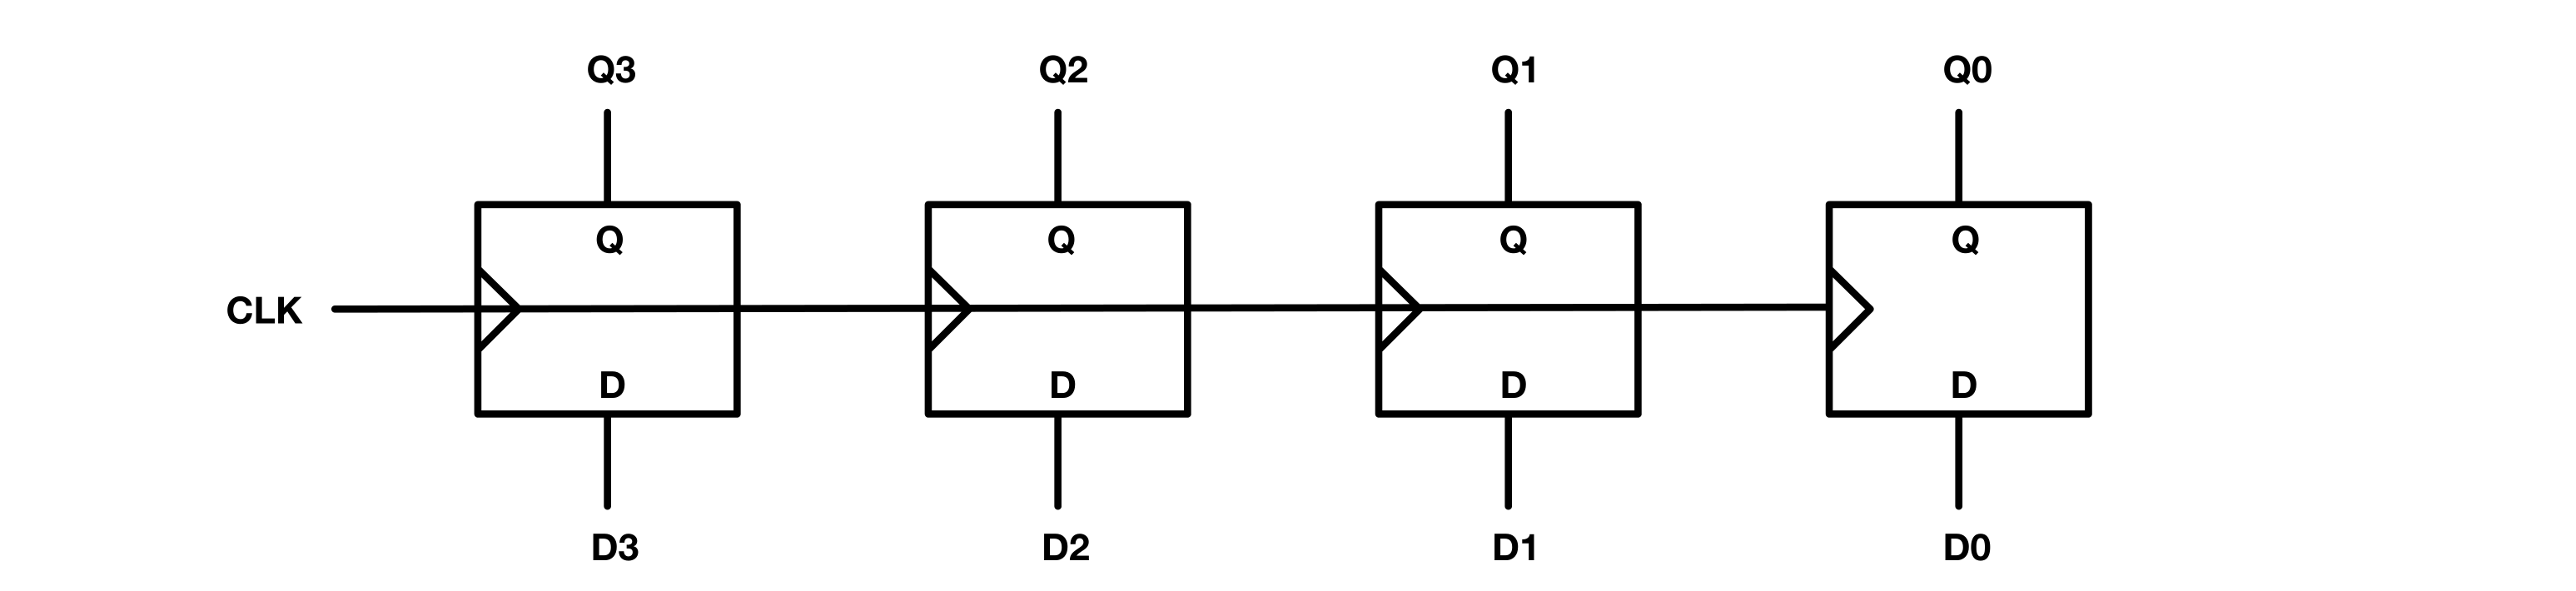 Figure 20: 4-bit Register as a chain of D flip flops